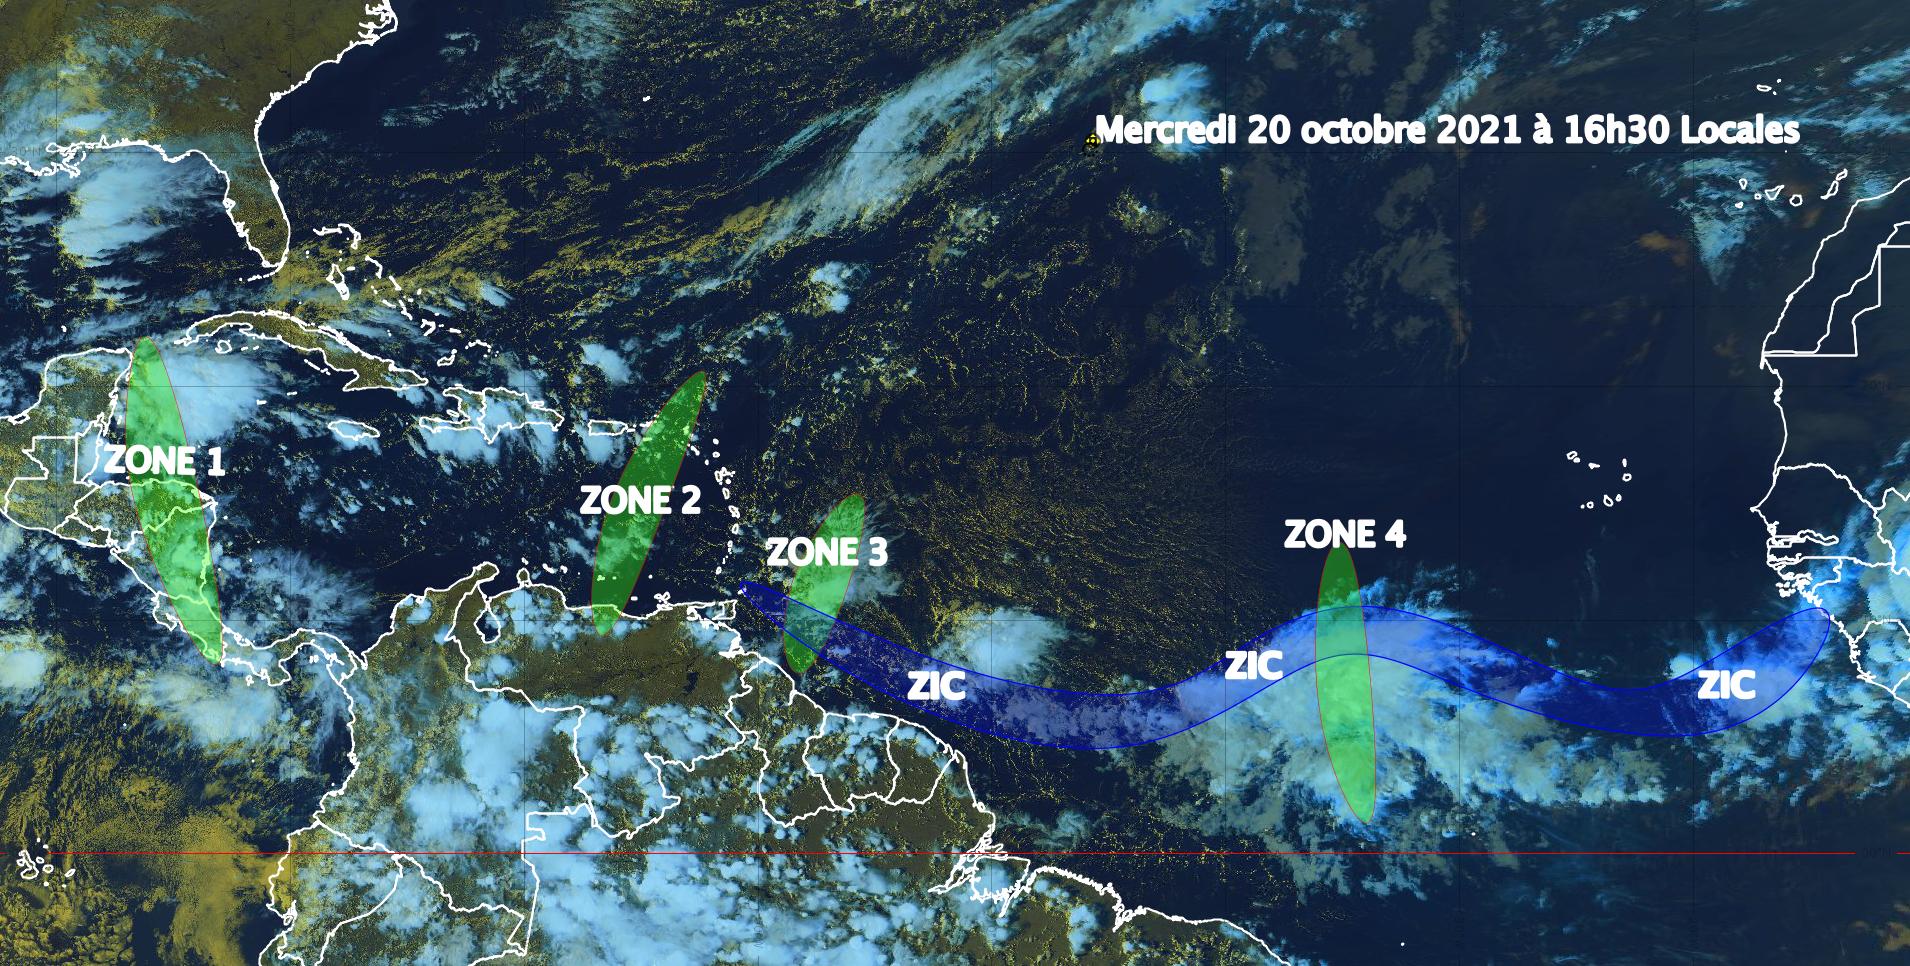     Situation toujours calme, quatre ondes tropicales en Caraïbe et dans l'Atlantique (bulletin du 20/10/21)

